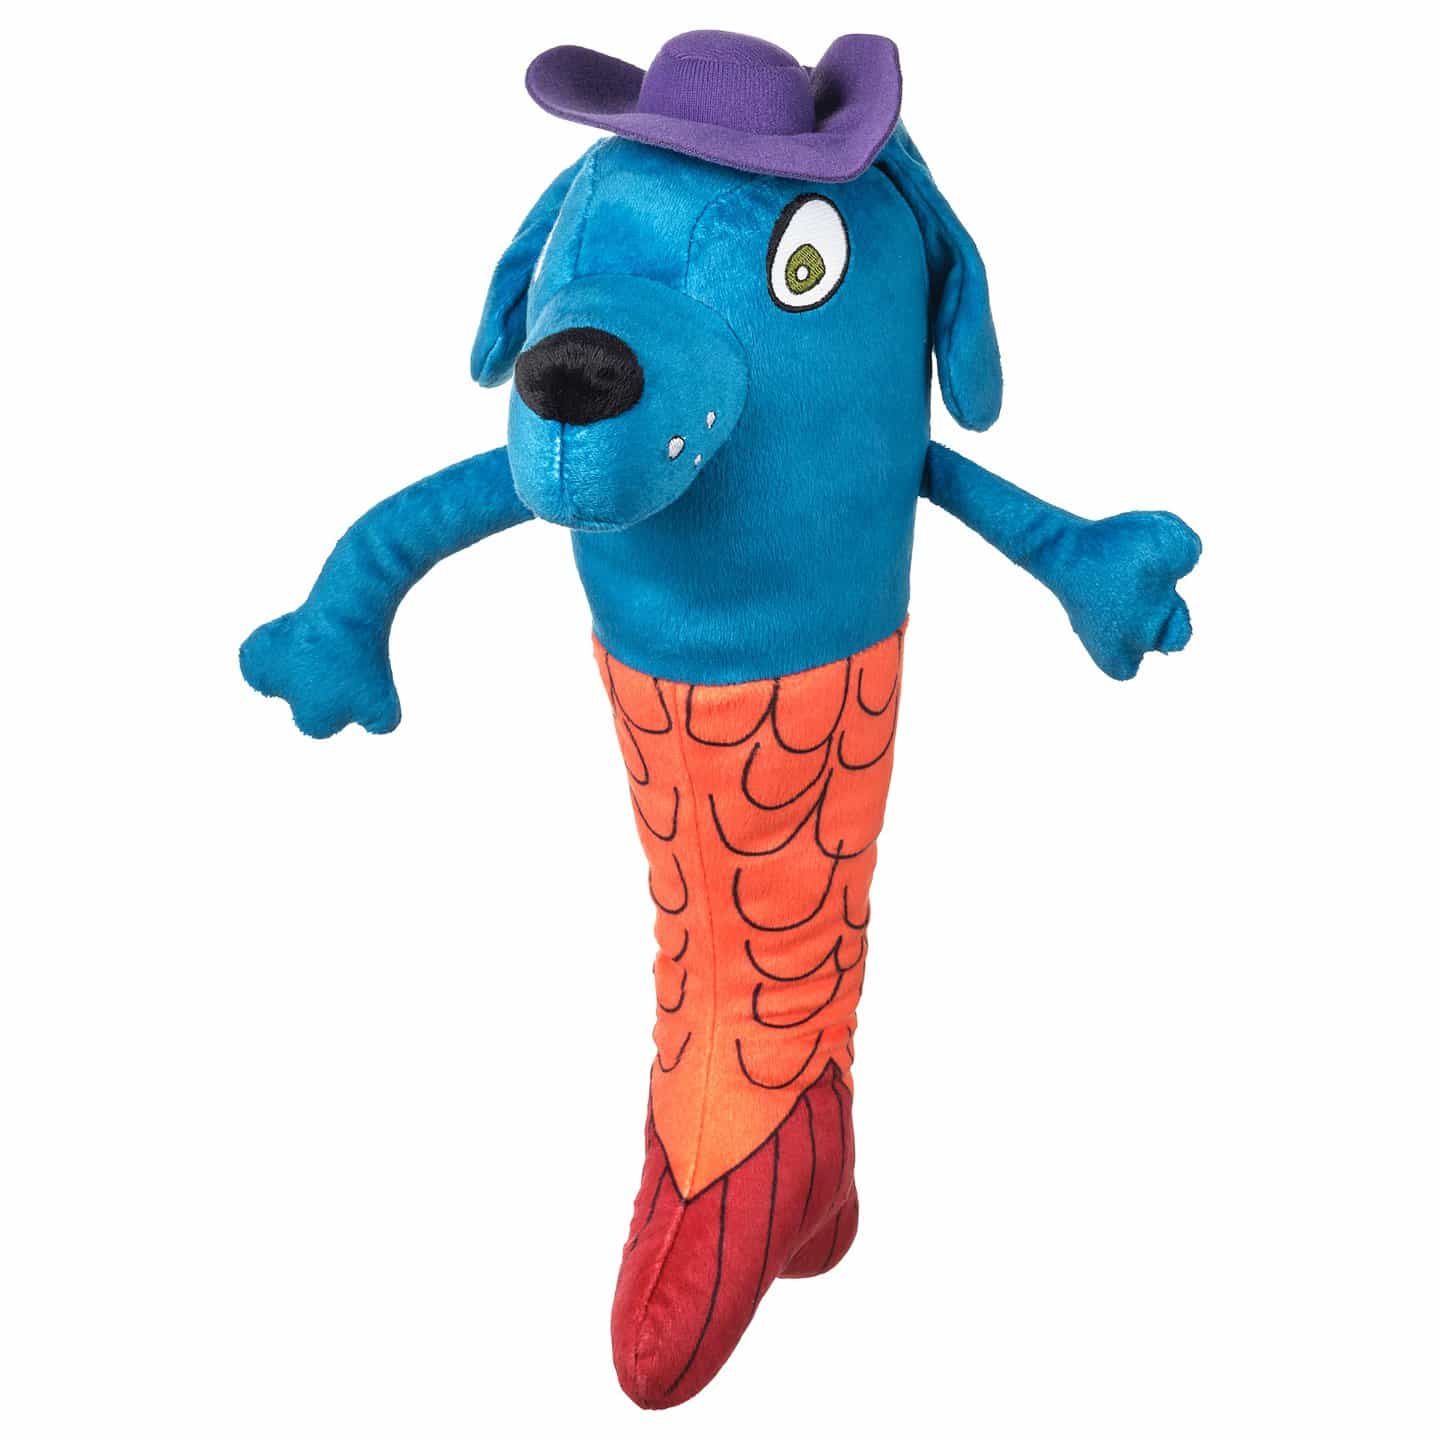 Mermaid Dog, diseñado por Savva, de nueve años de Rusia